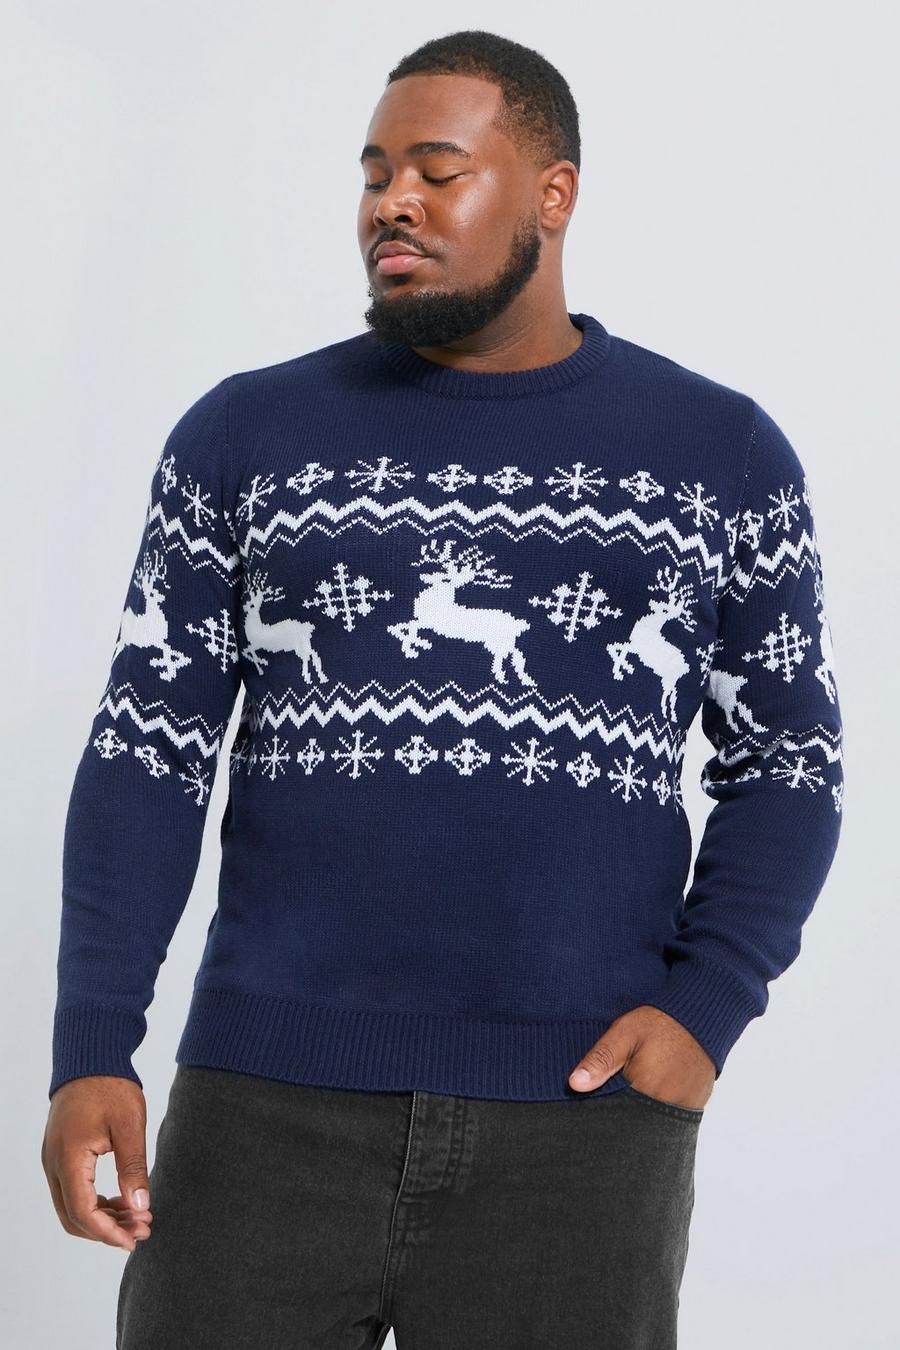 Maglione natalizio Plus Size con renne, pannelli e motivi Fairisle, Navy blu oltremare